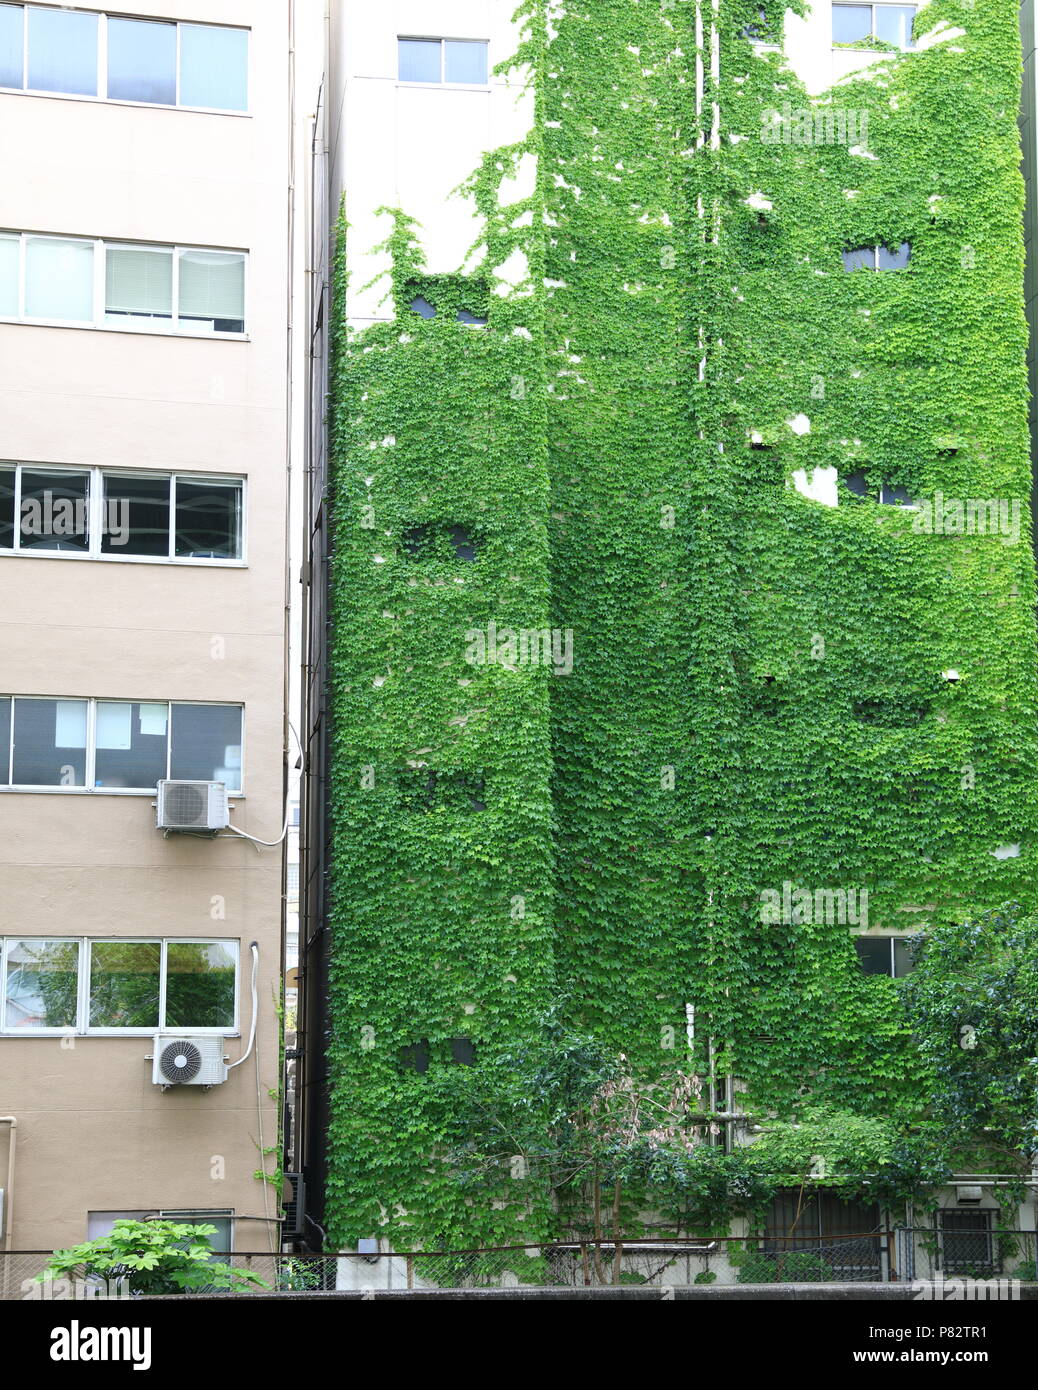 Modern green building with climbing plant or ivy, Eco friendly building, Vertical garden facade design. Stock Photo